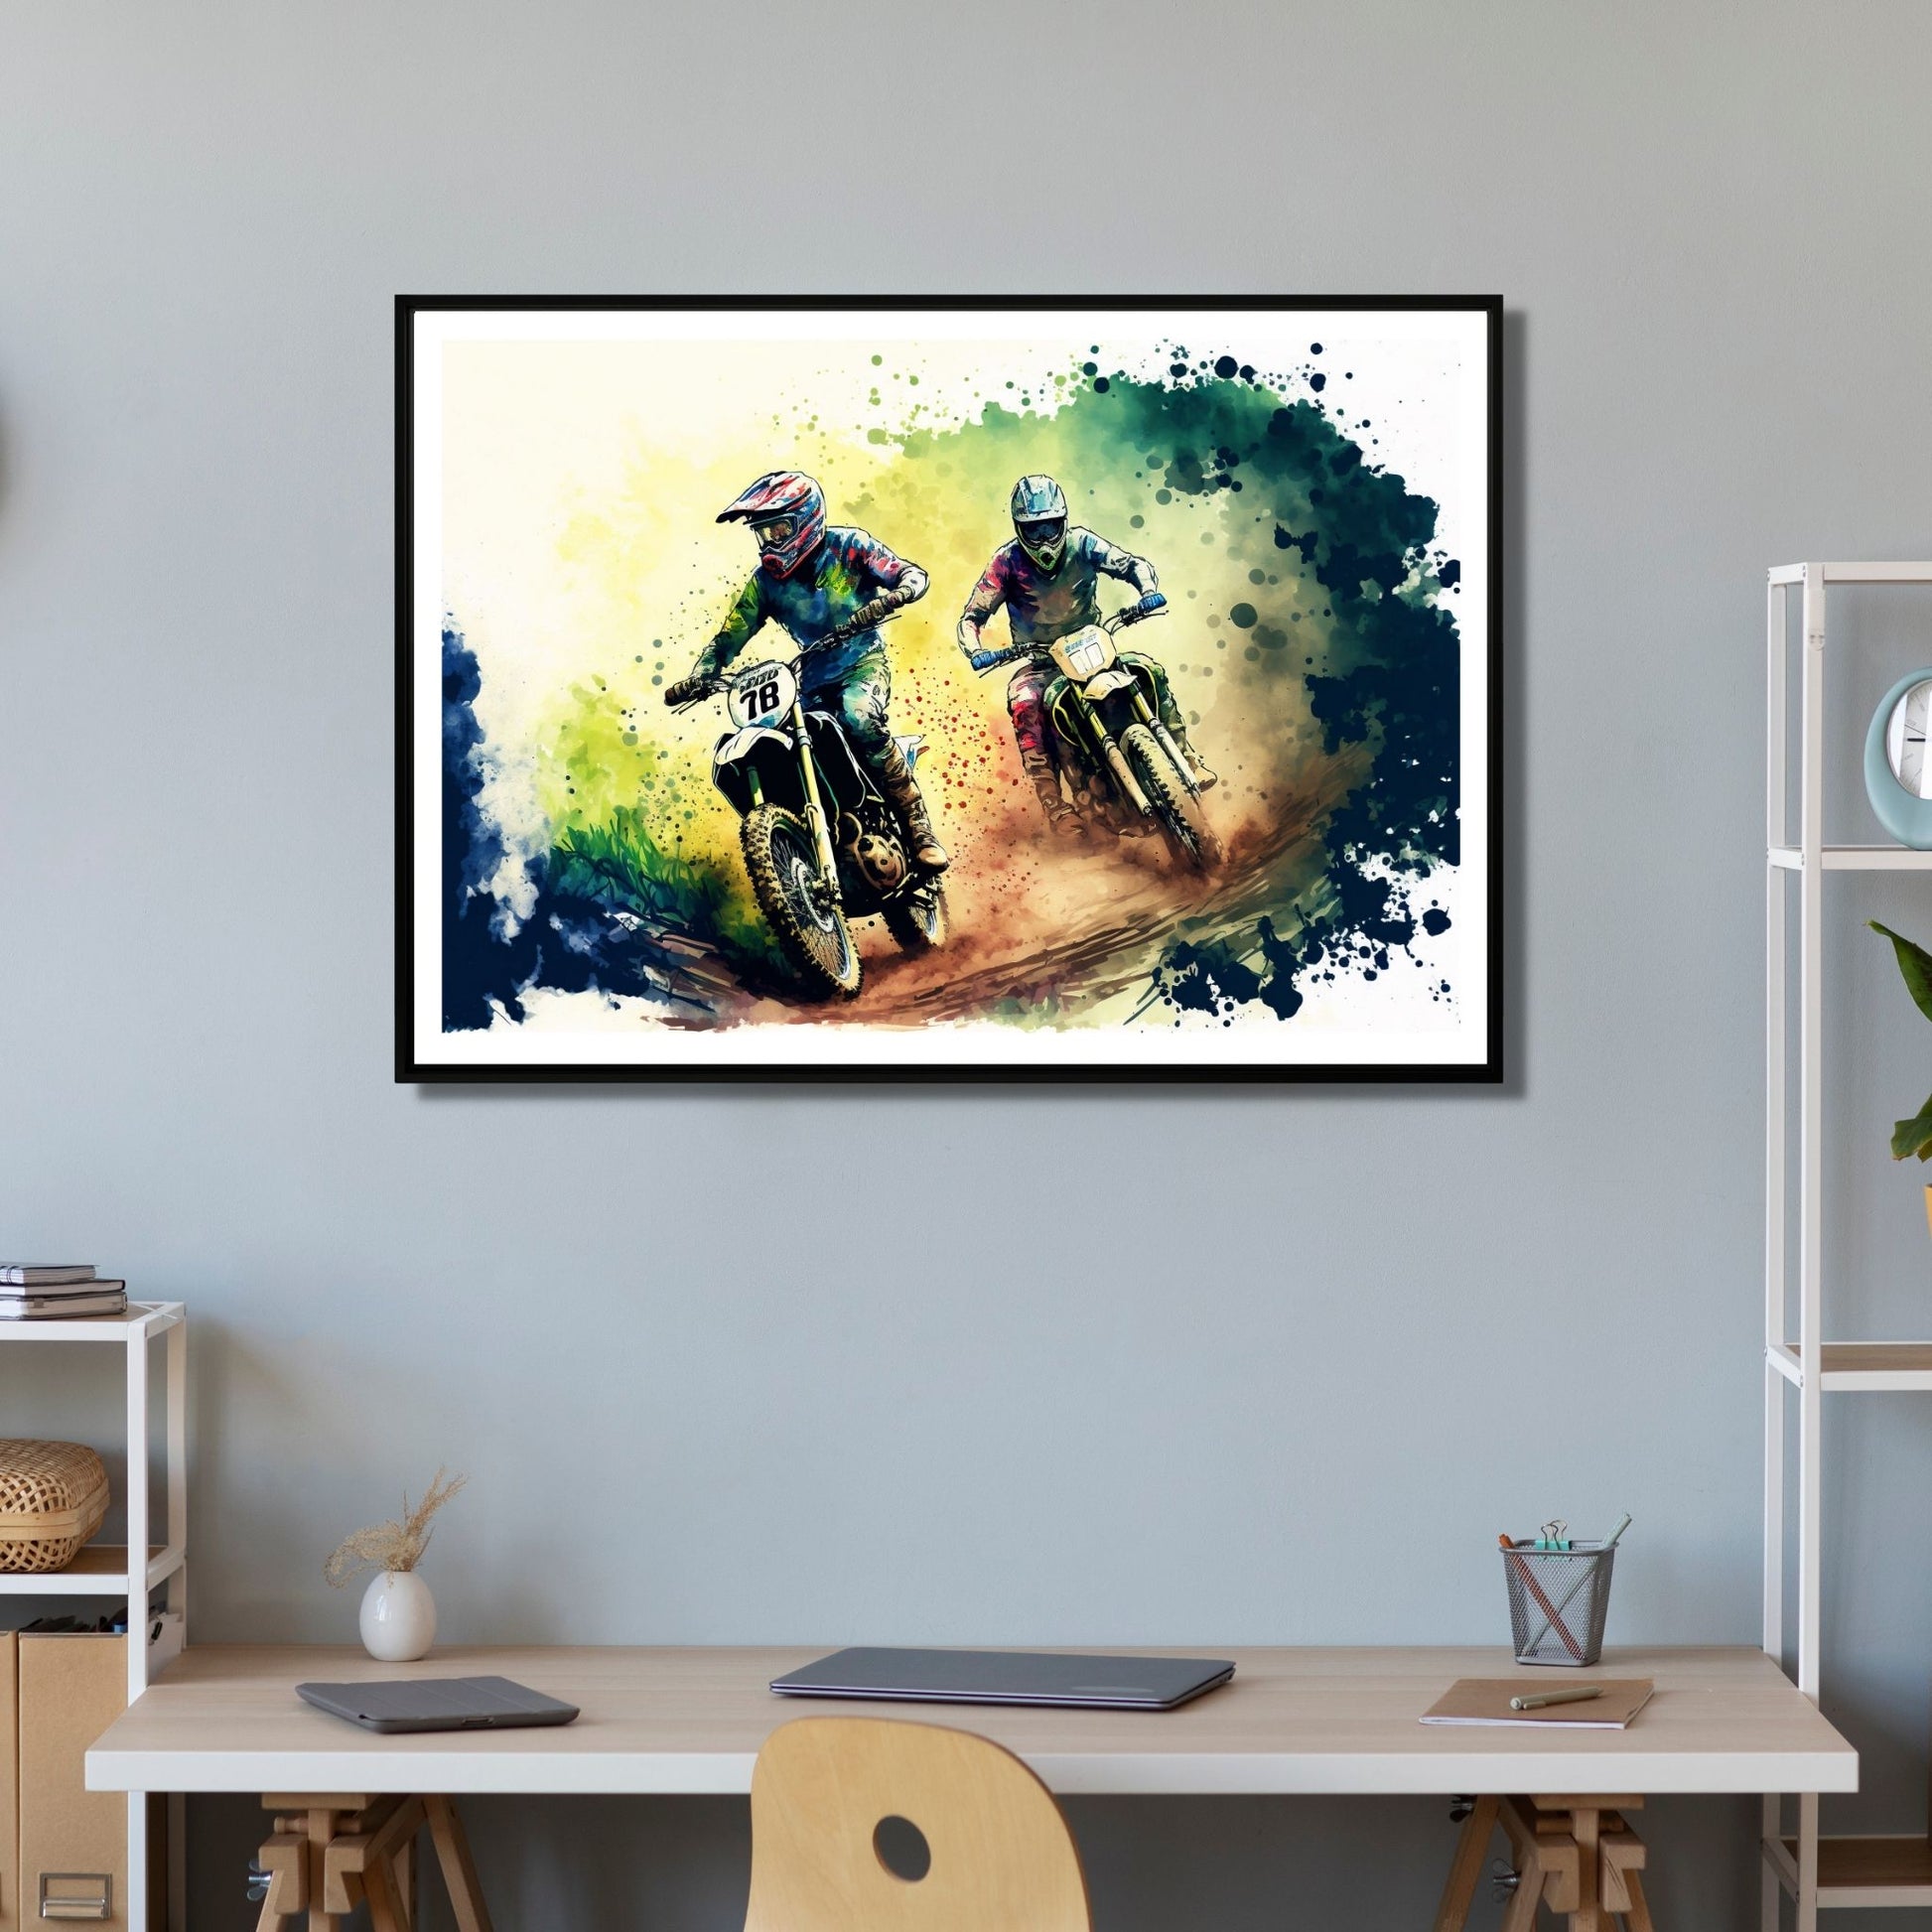 Grafisk abstrakt illustrasjon av to racersyklister som konkurrerer på sine motorsykler. Et spennende og dynamisk bilde som passer perfekt for alle motorsportentusiaster. Illustrasjonsbilde viser motivet som plakat.